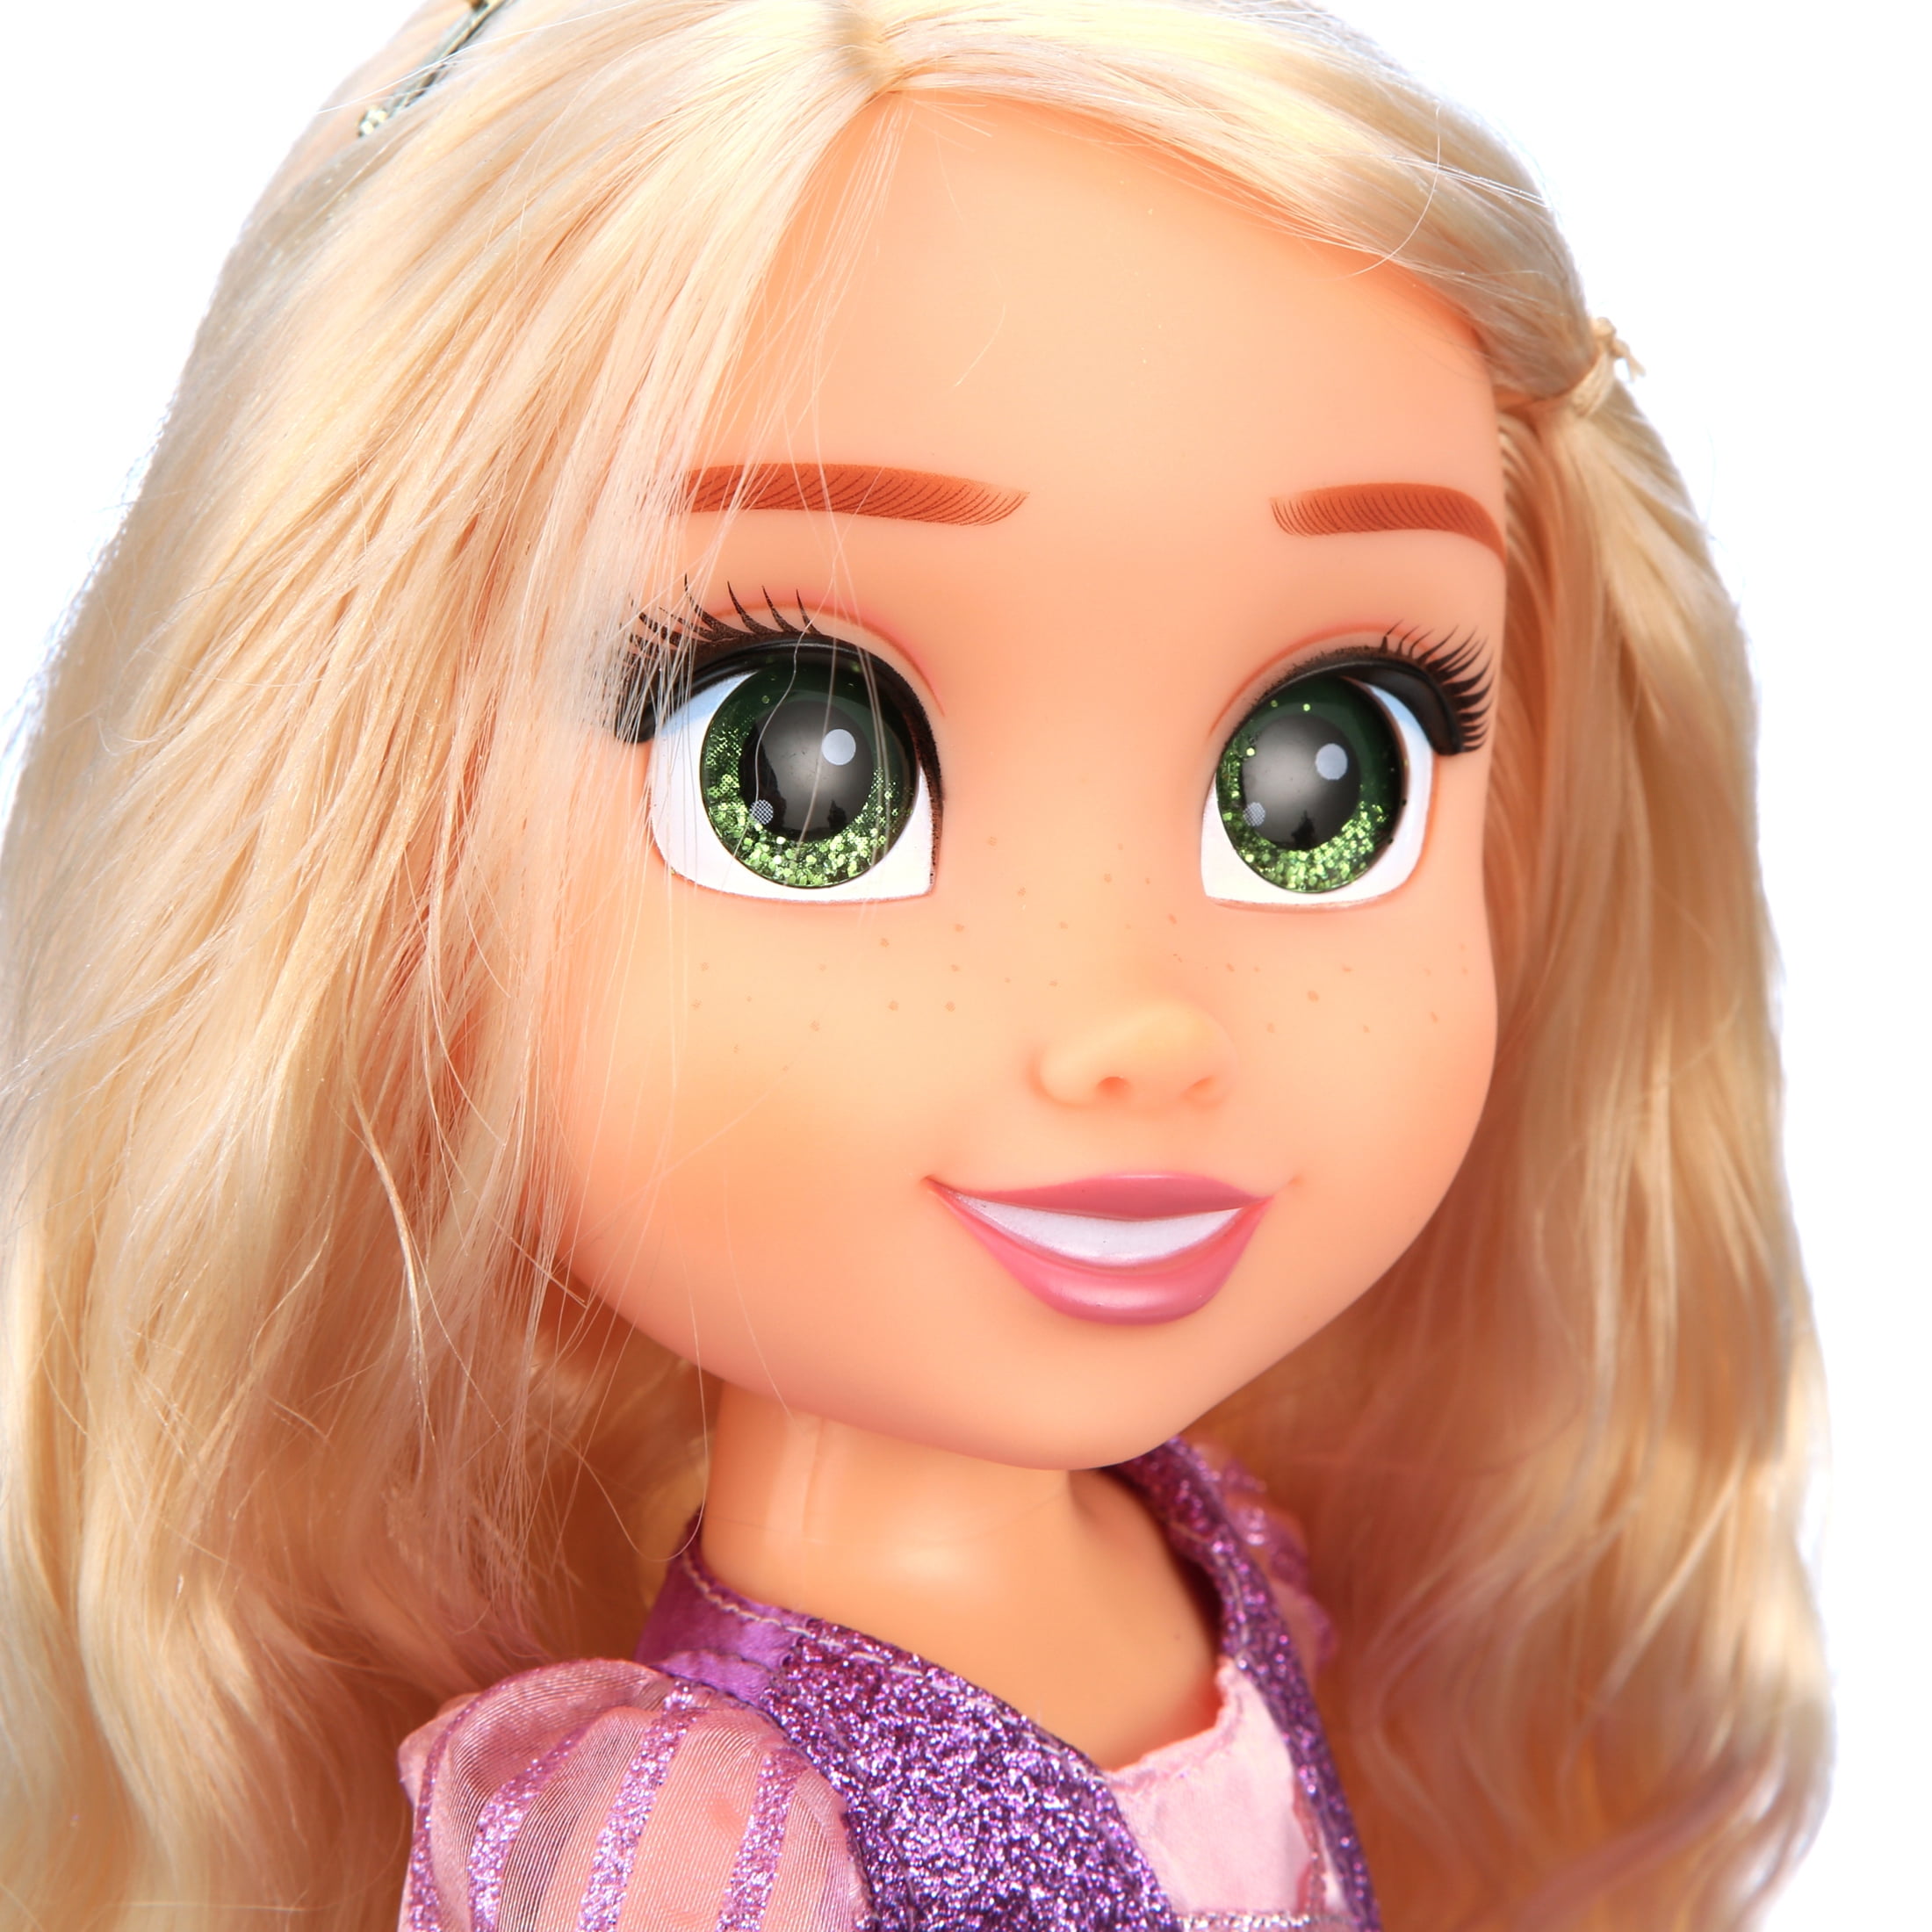 Disney princesses poupée ariel 'ma meilleure amie' - 80 cm PRI0039897990880  - Conforama